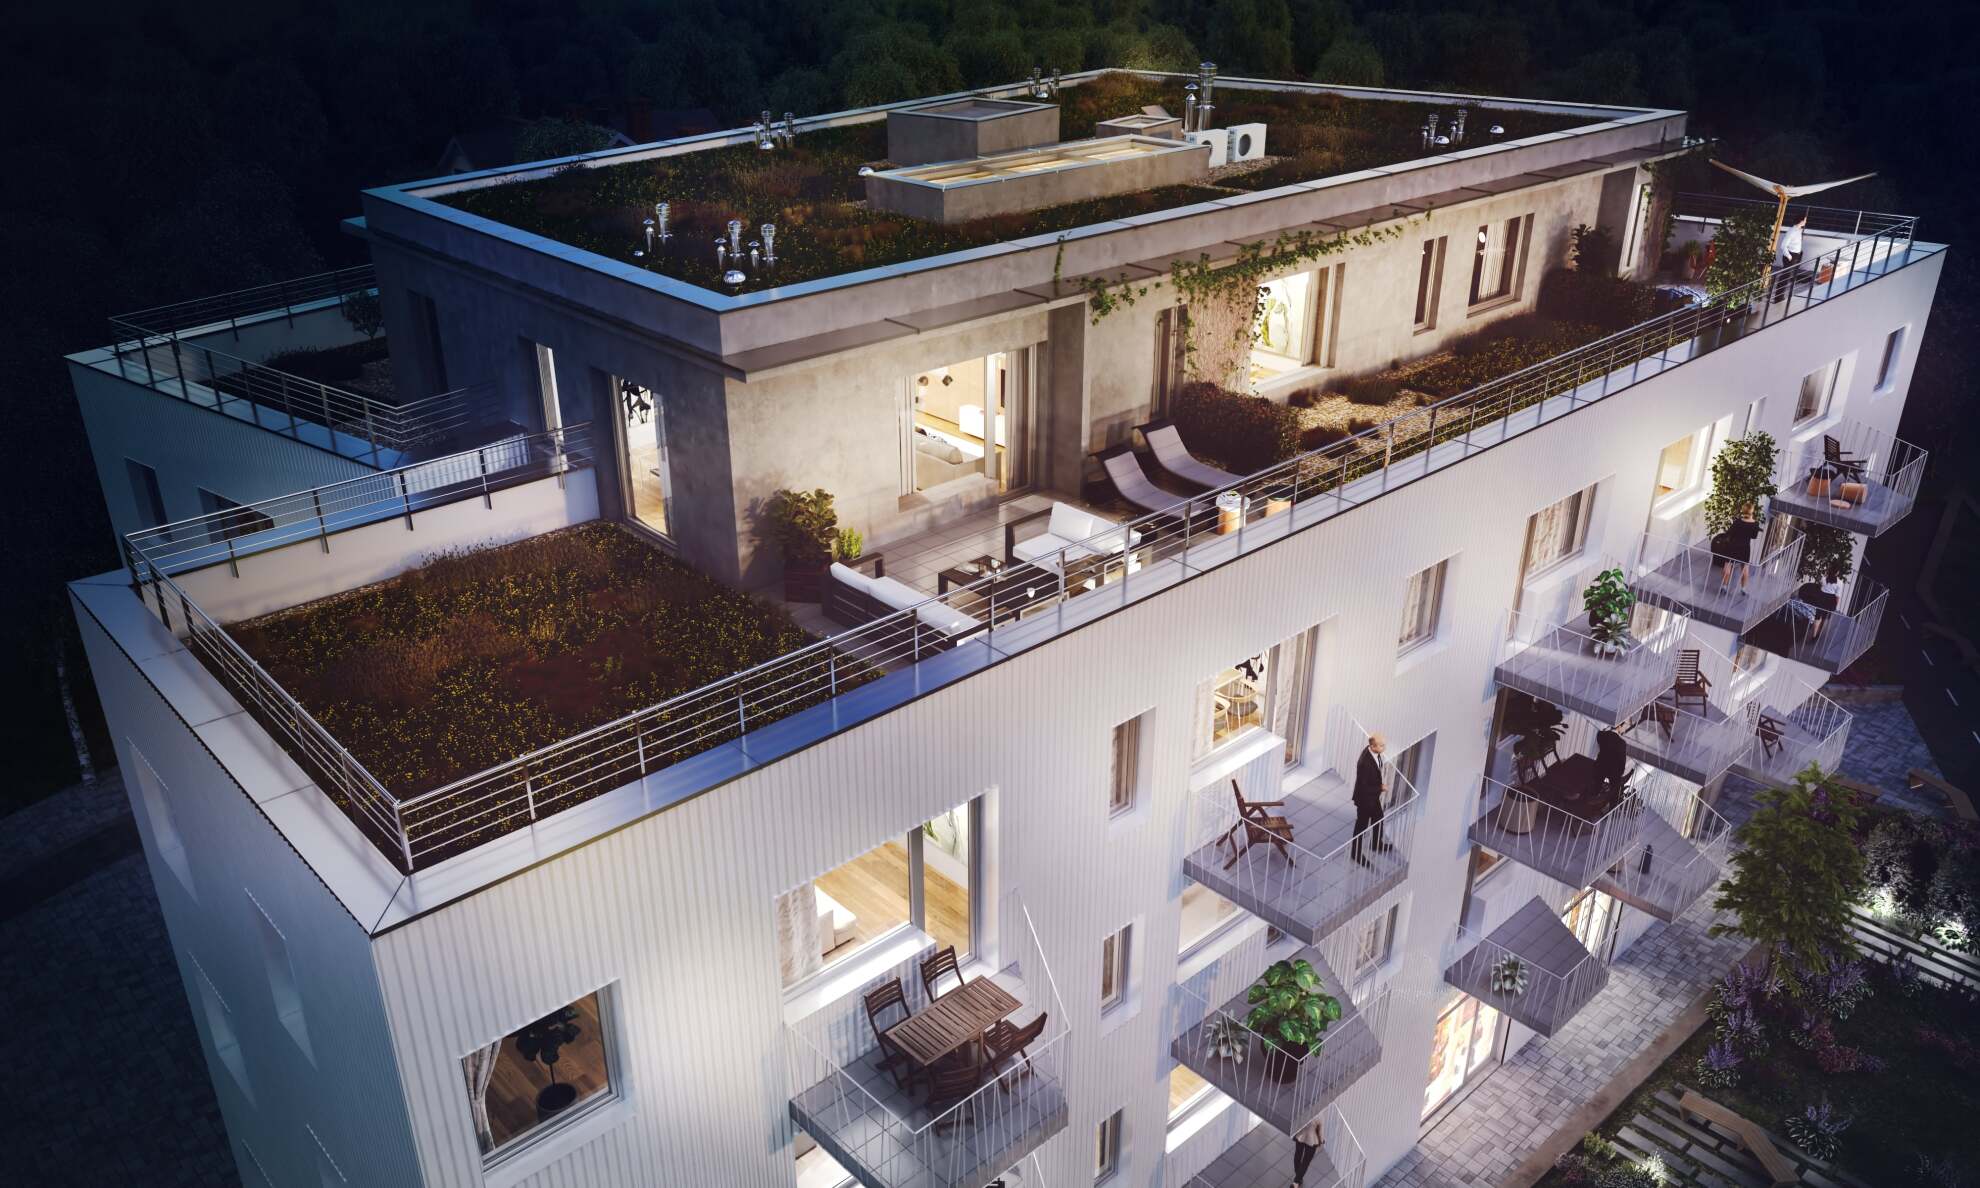 Sold over 70% of Rezidence Hloubětín project